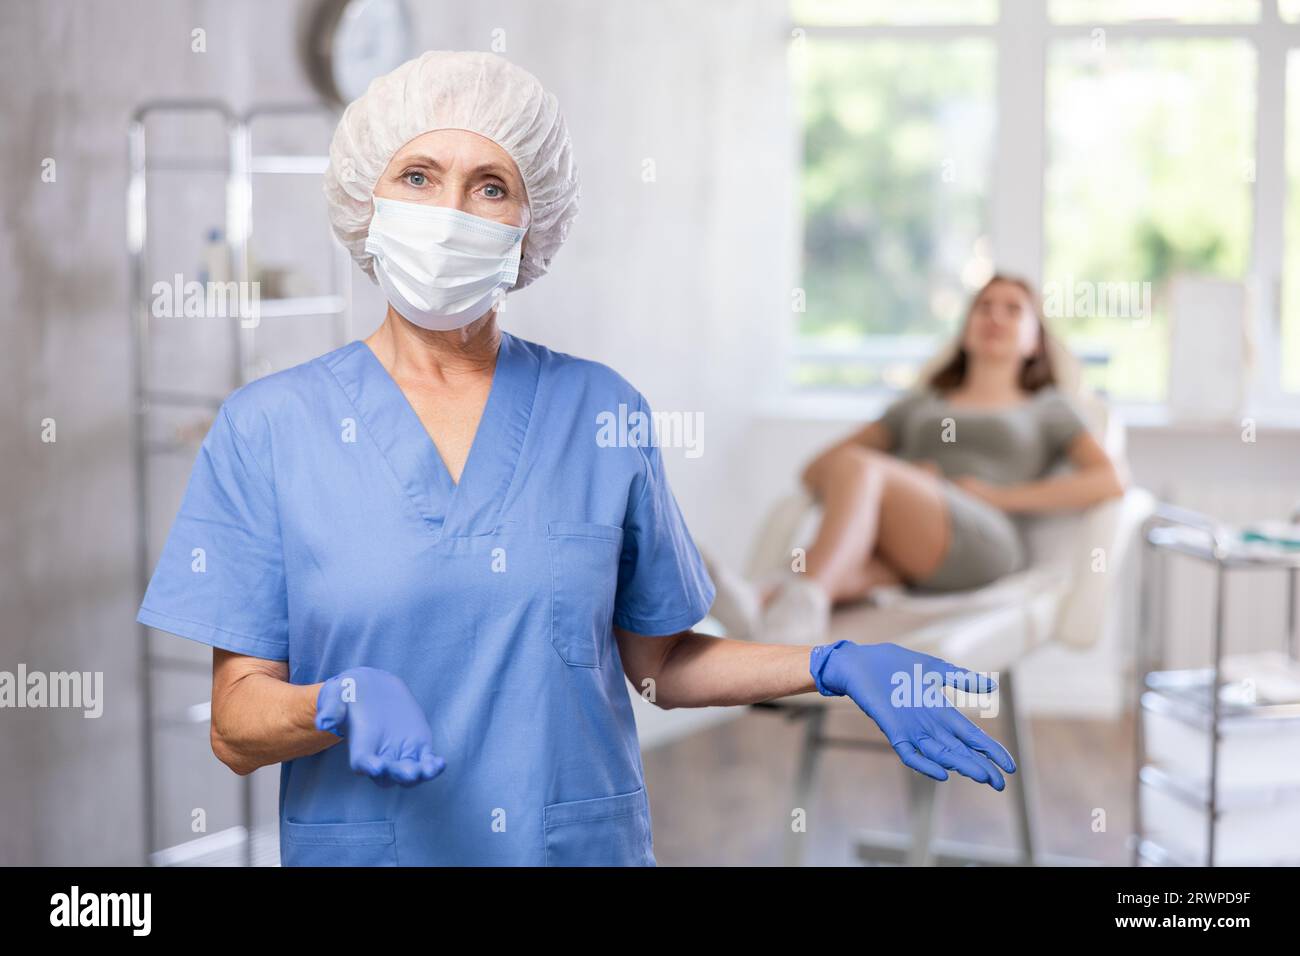 Glücklicher Arzt oder Krankenschwester mit Maske in Uniform mit gekreuztem Arm, Patient hinter dem Sofa. Stockfoto